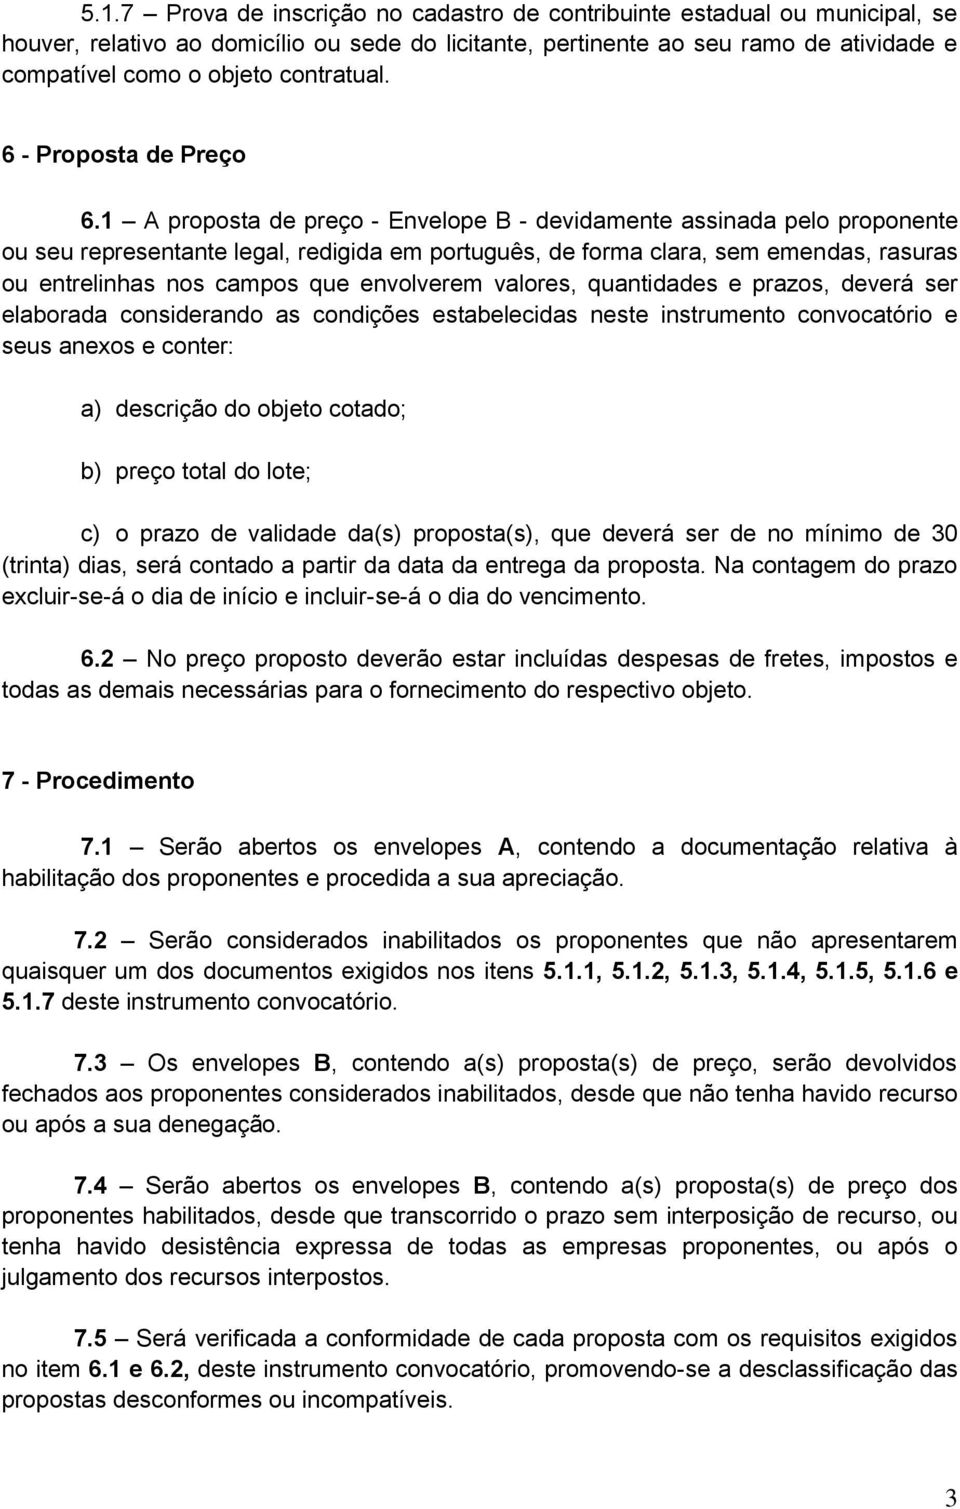 1 A proposta de preço - Envelope B - devidamente assinada pelo proponente ou seu representante legal, redigida em português, de forma clara, sem emendas, rasuras ou entrelinhas nos campos que